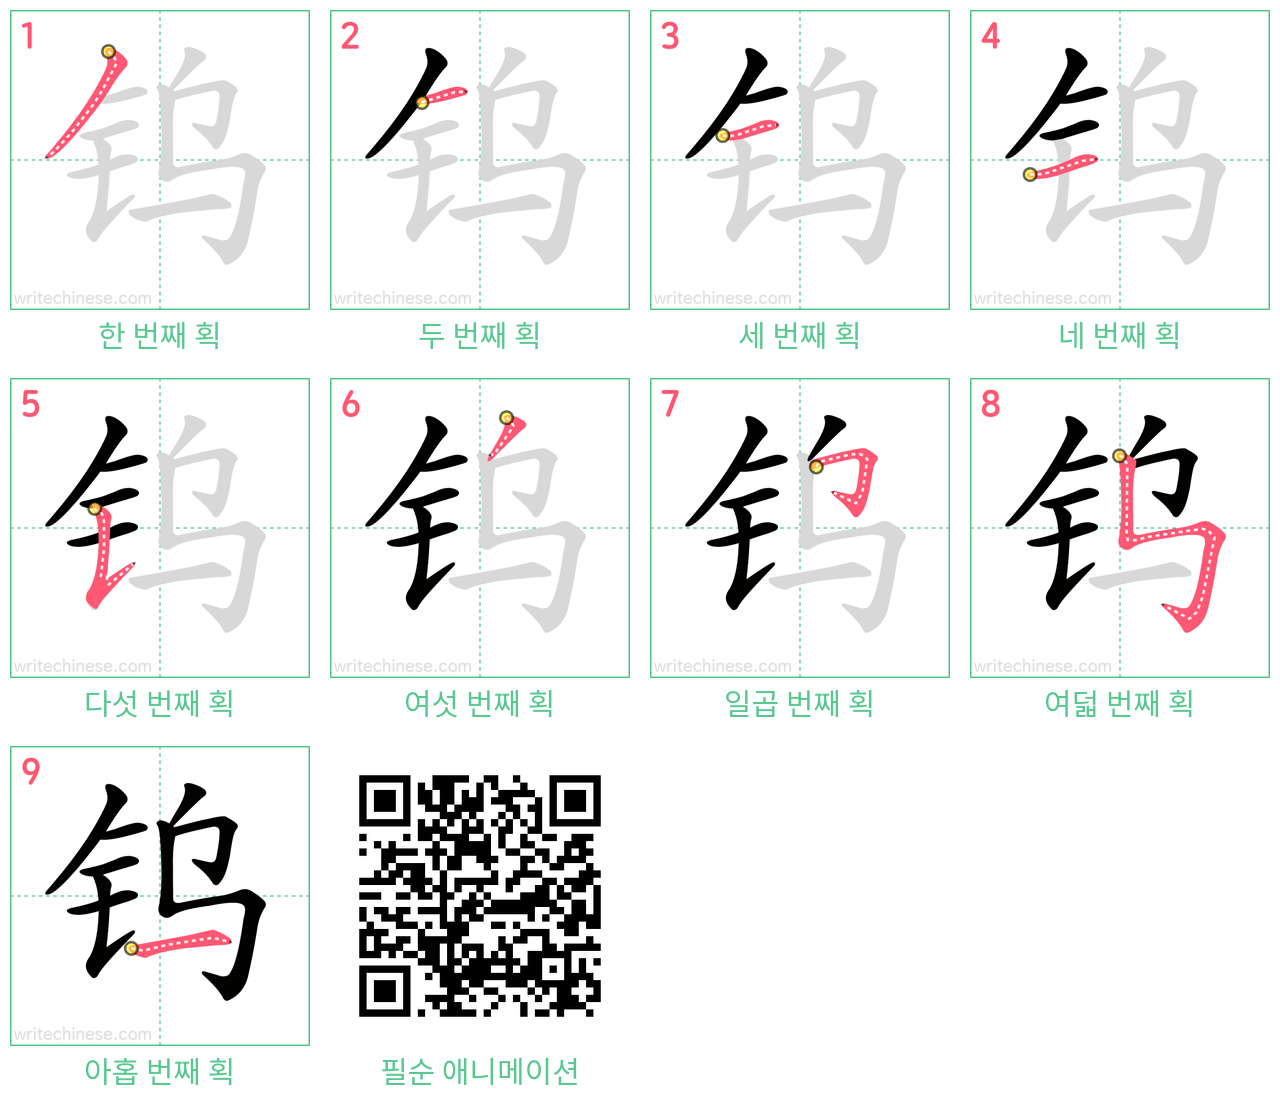 钨 step-by-step stroke order diagrams